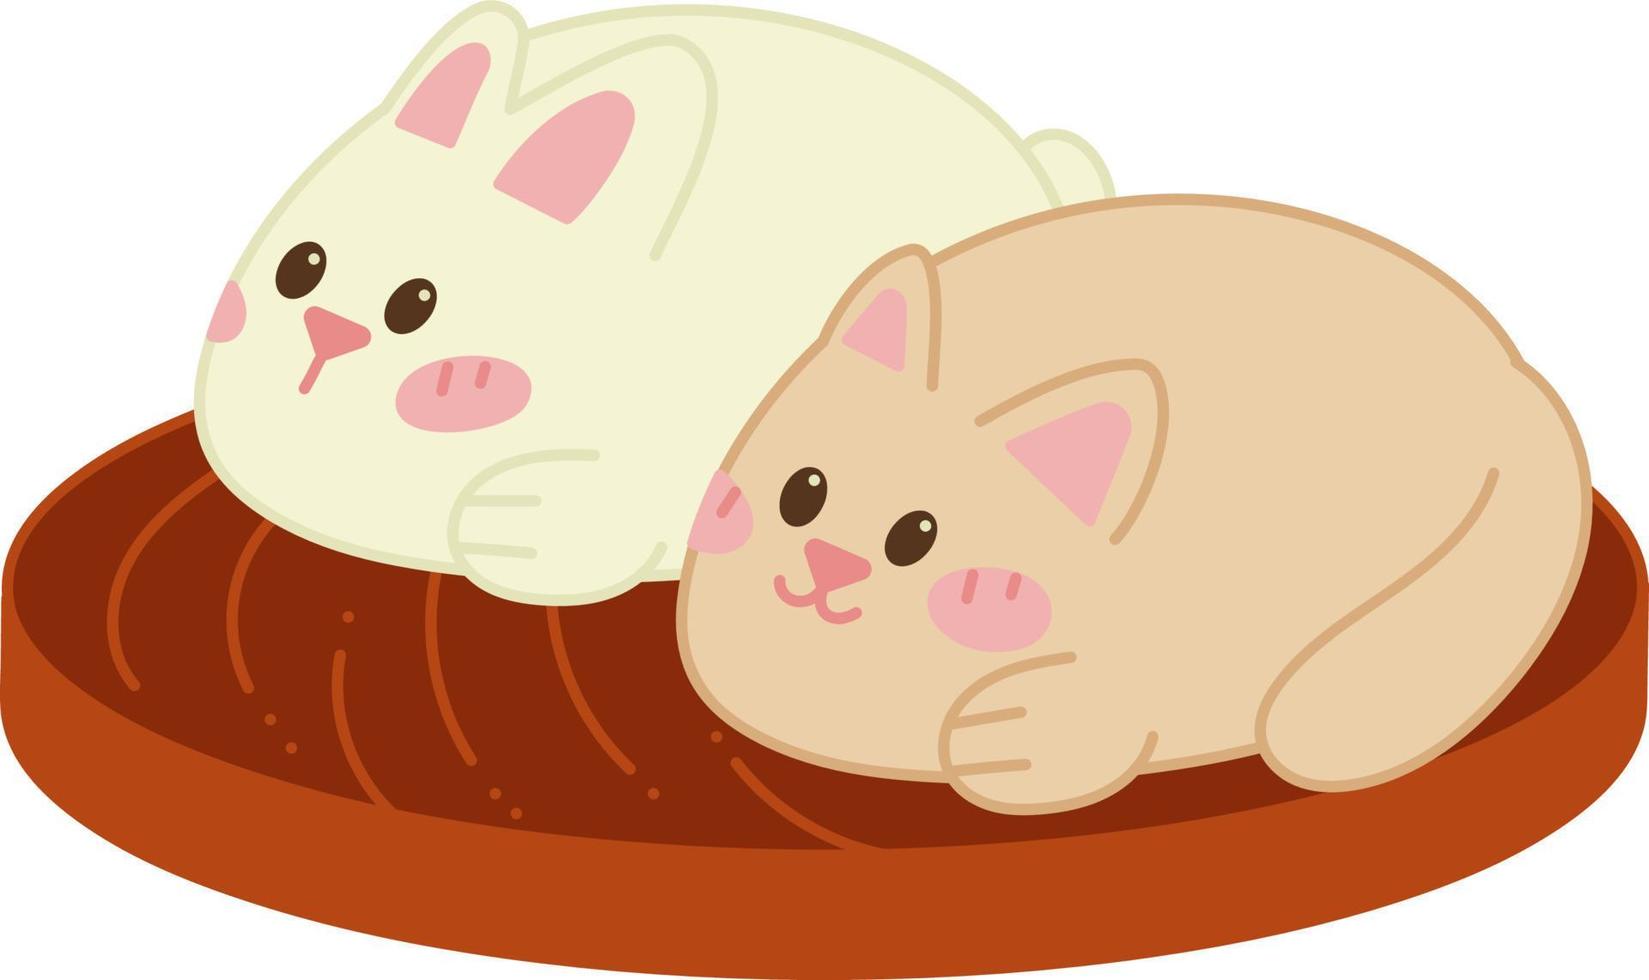 manju doodle3. tortas japonesas fofas na forma de um gato e um coelho. doodle ilustração em vetor cor dos desenhos animados.